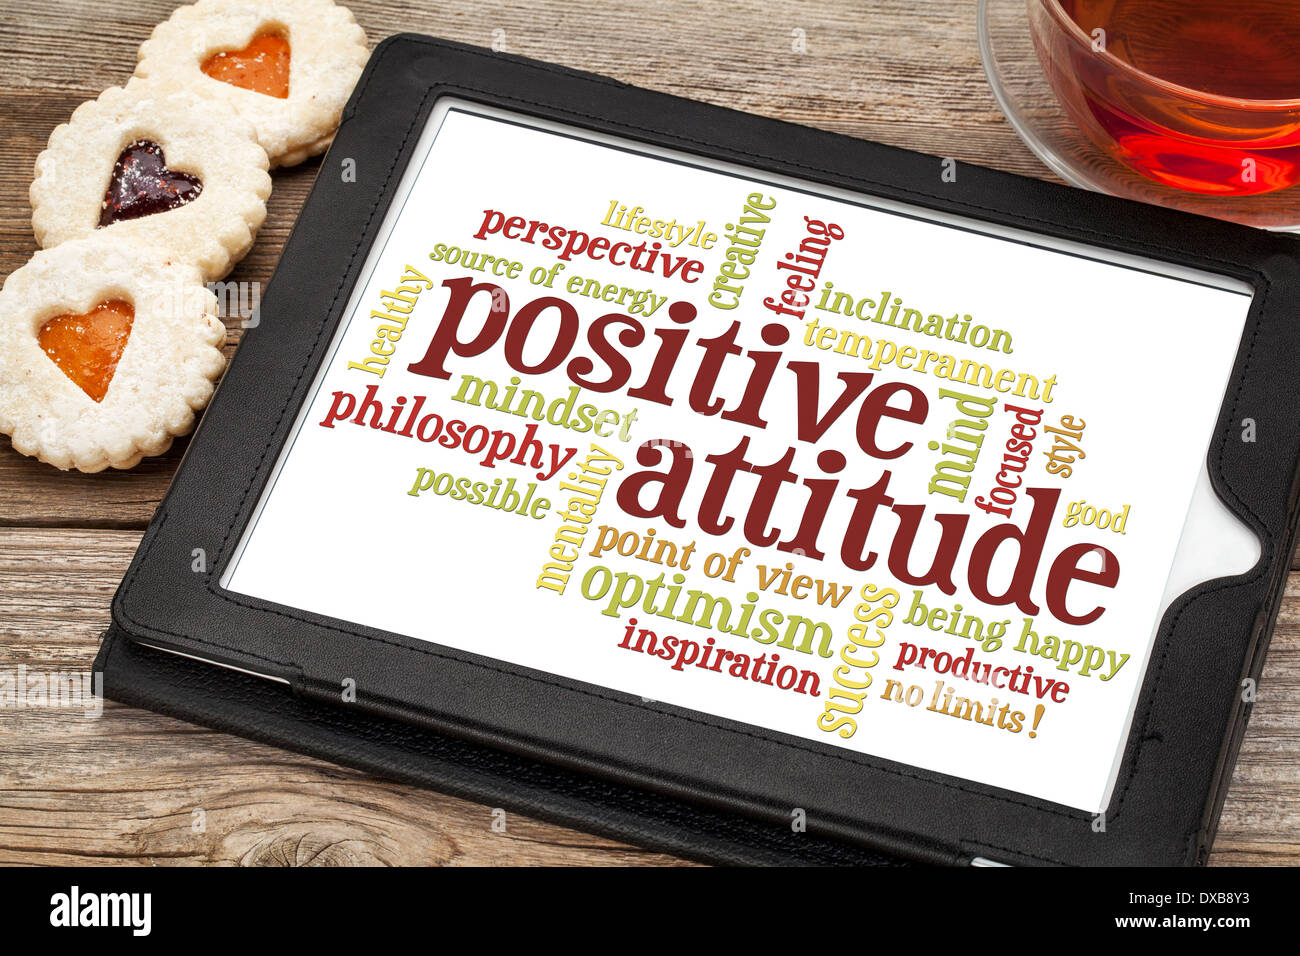 positive Einstellung Word cloud auf digitale Tablett mit einer Tasse Tee und Cookies Herz Stockfoto